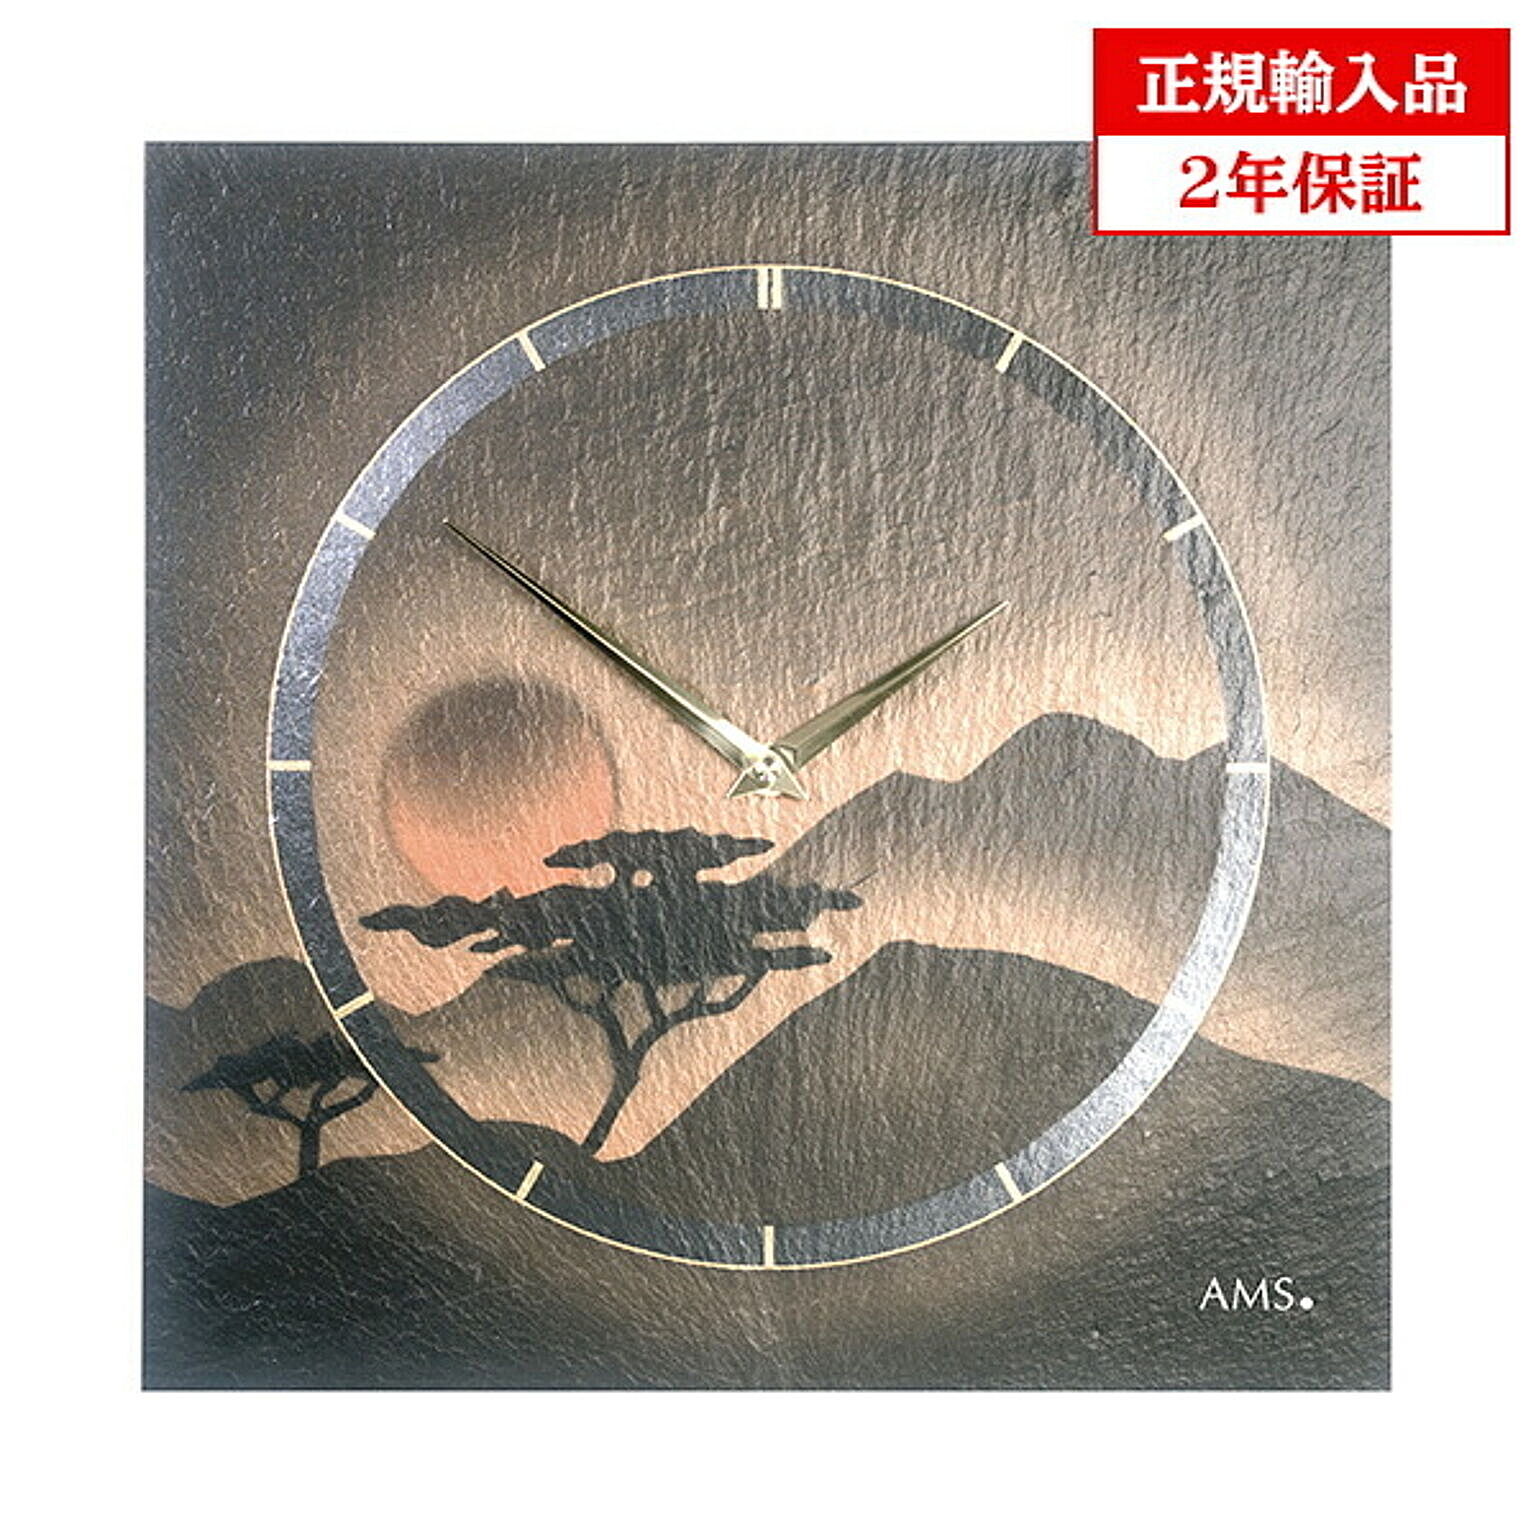 アームス社 AMS 9515 クオーツ 掛け時計 (掛時計) スレート ドイツ製 【正規輸入品】【メーカー保証2年】